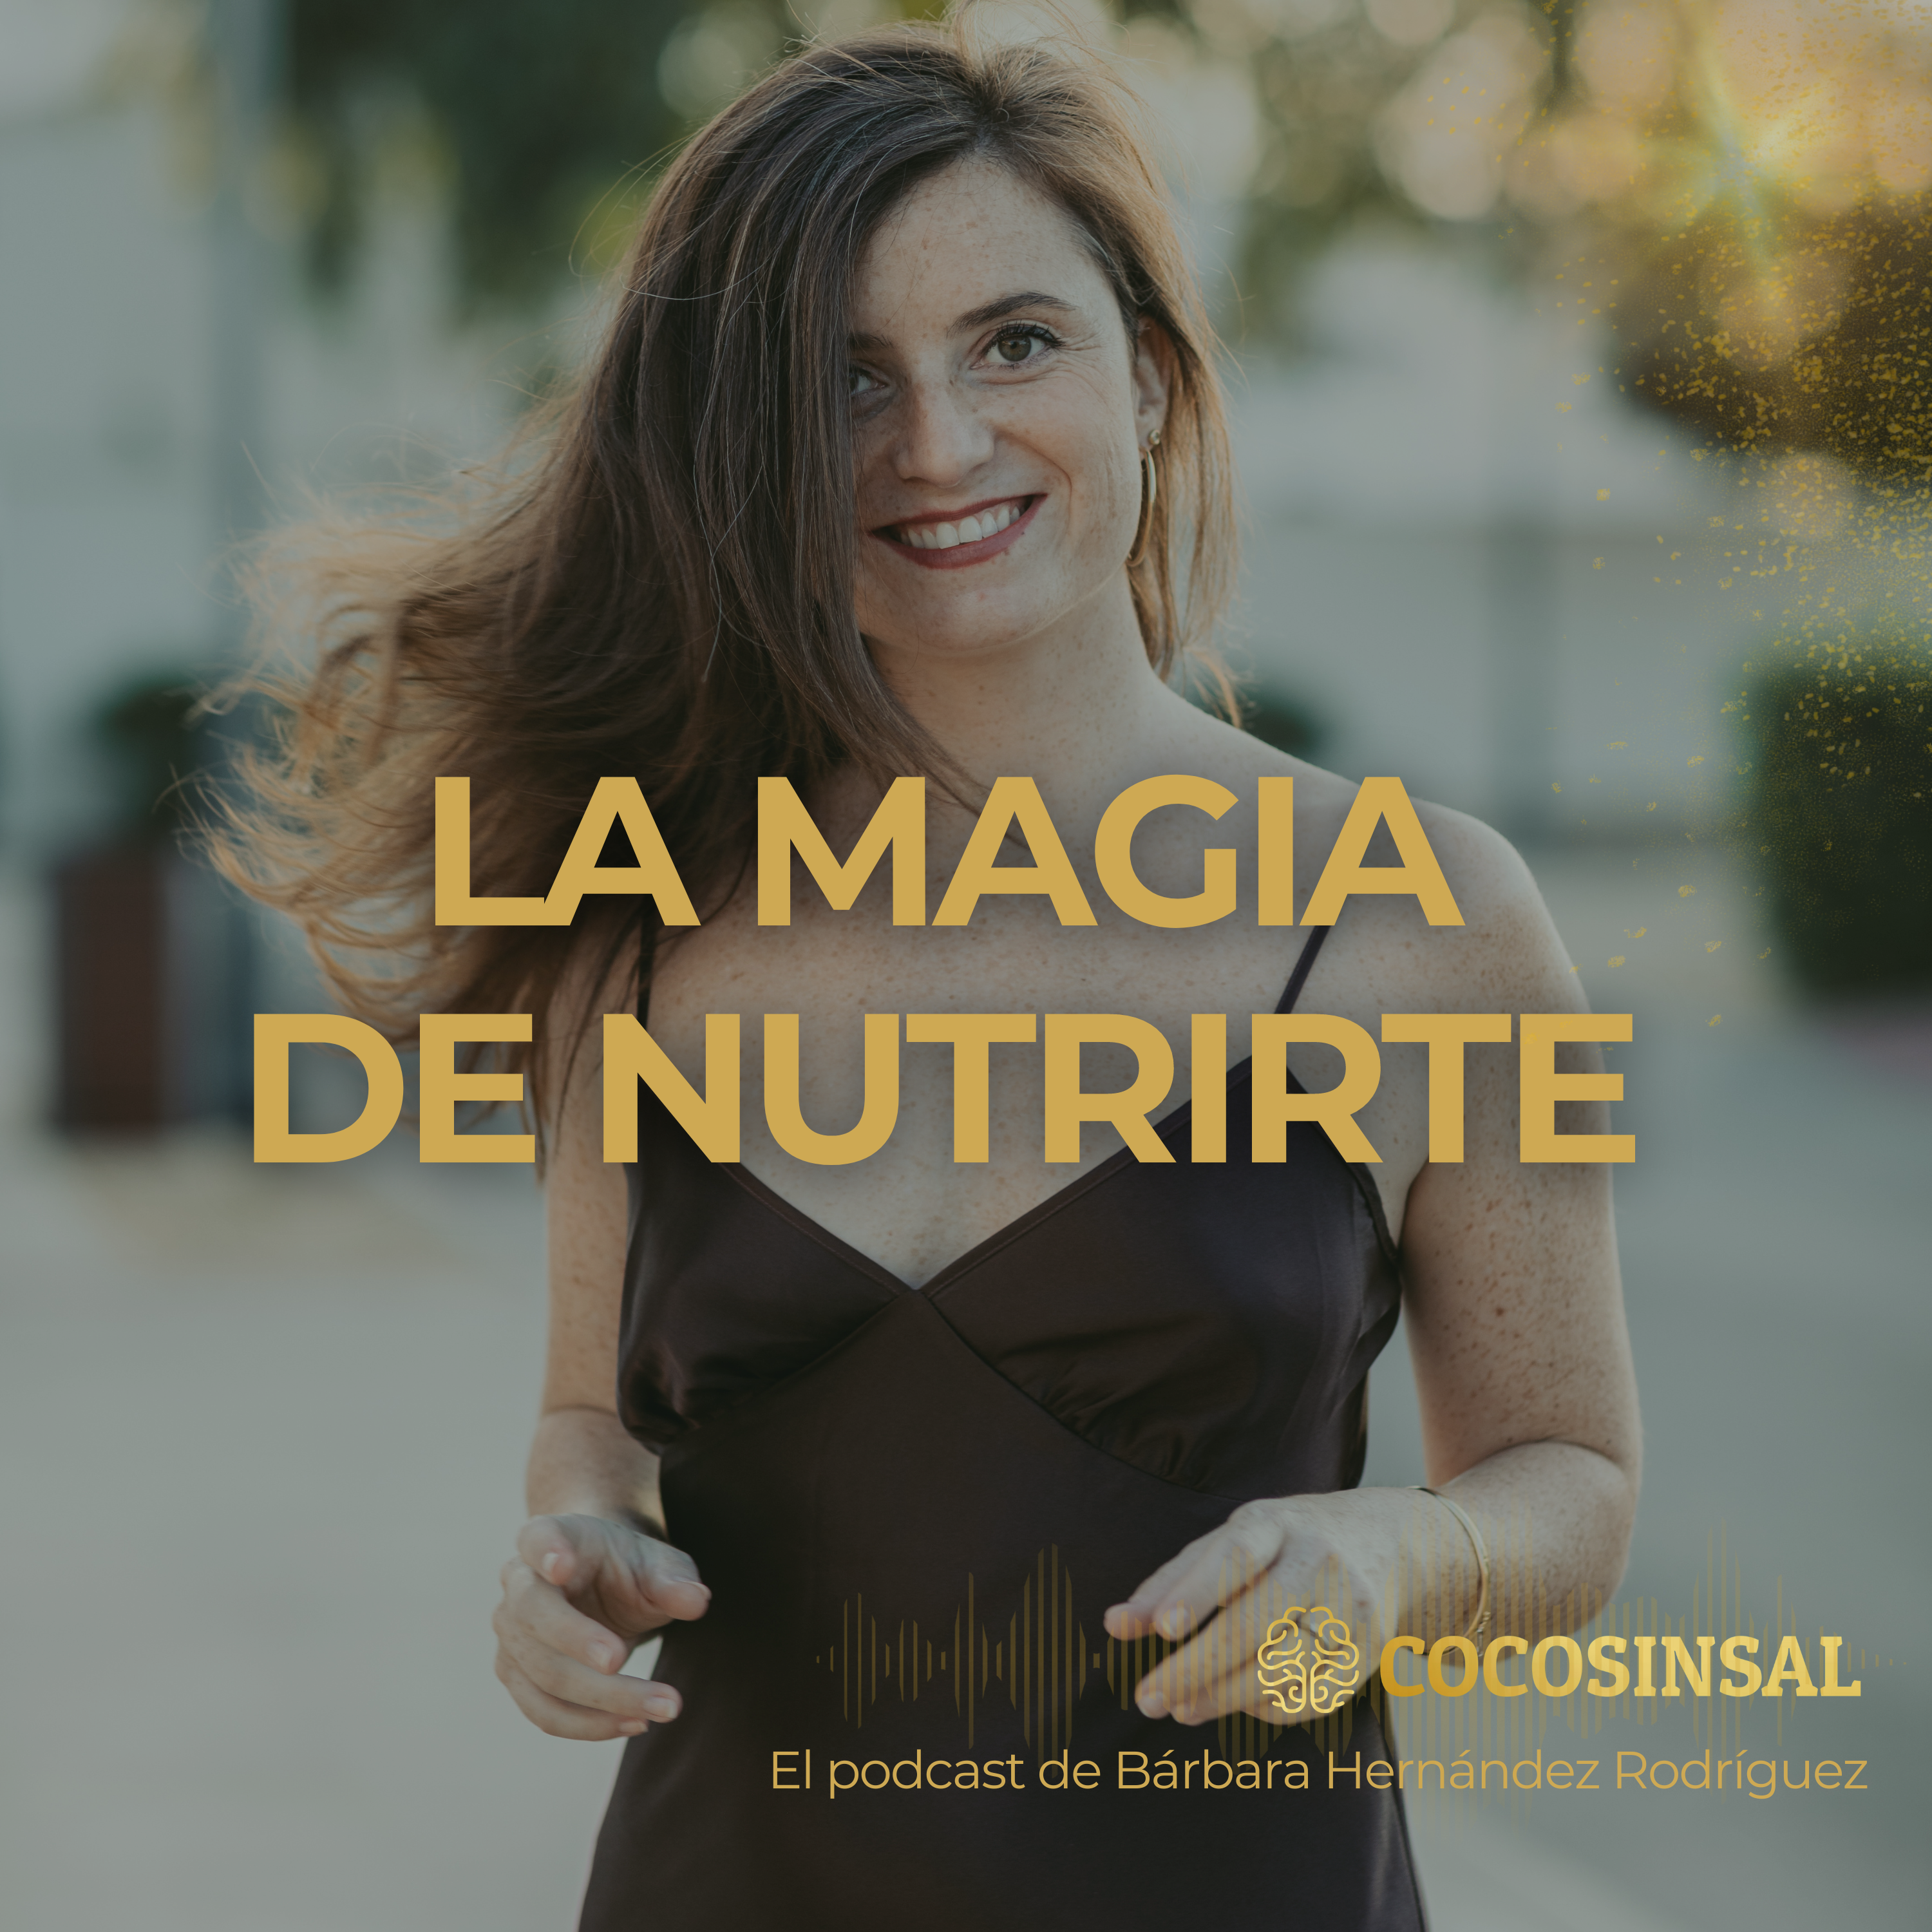 Podcast de Bárbara Hernández Rodríguez, La Magia de nutrirte